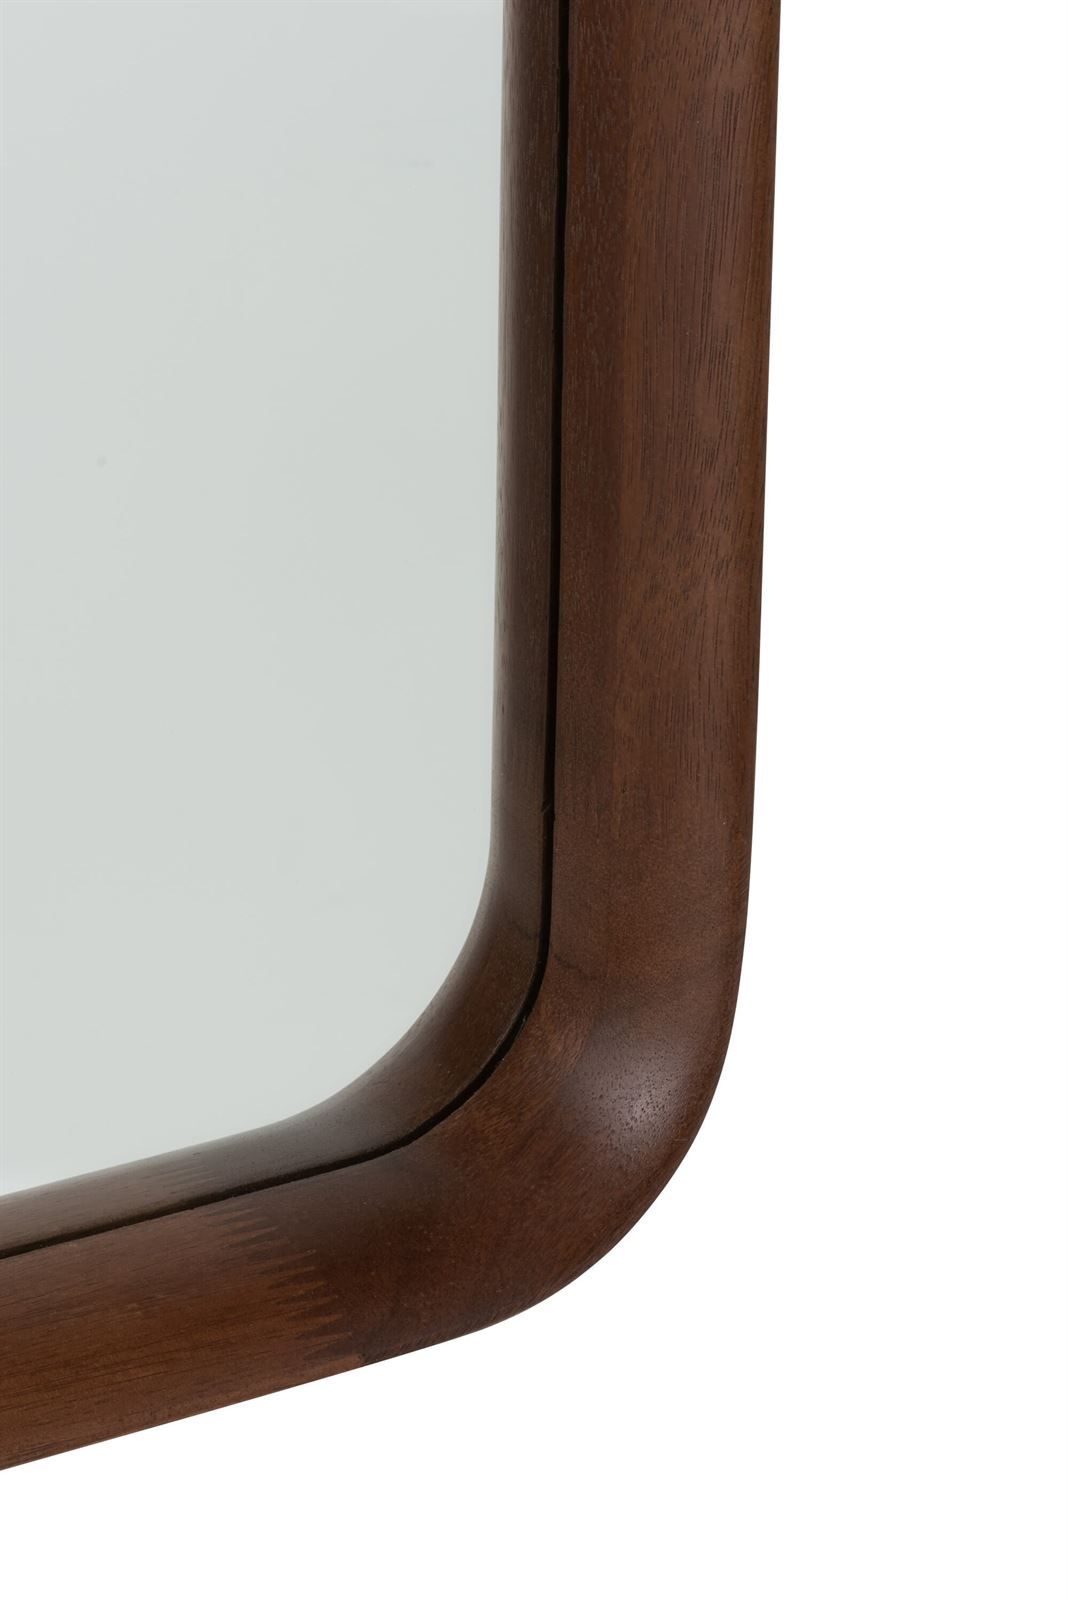 Espejo Rectangular madera Grande - Imagen 4